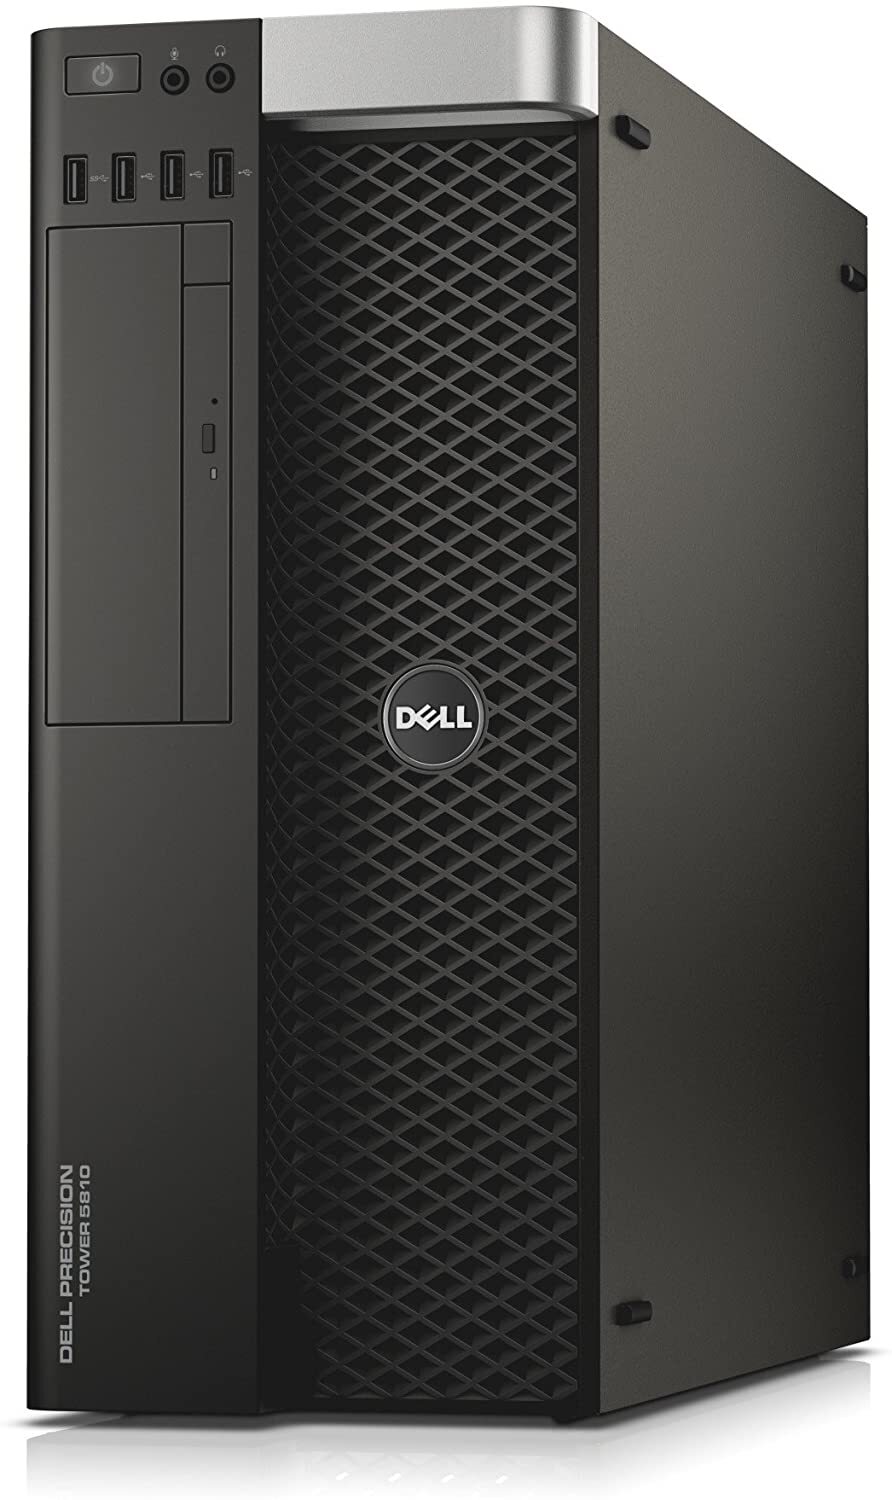 Dell Precision Tower 5810 Intel Xeon E5-1650 V3 3.50GHz 32GB RAM 512GB SSD Win 10 Full Size Image